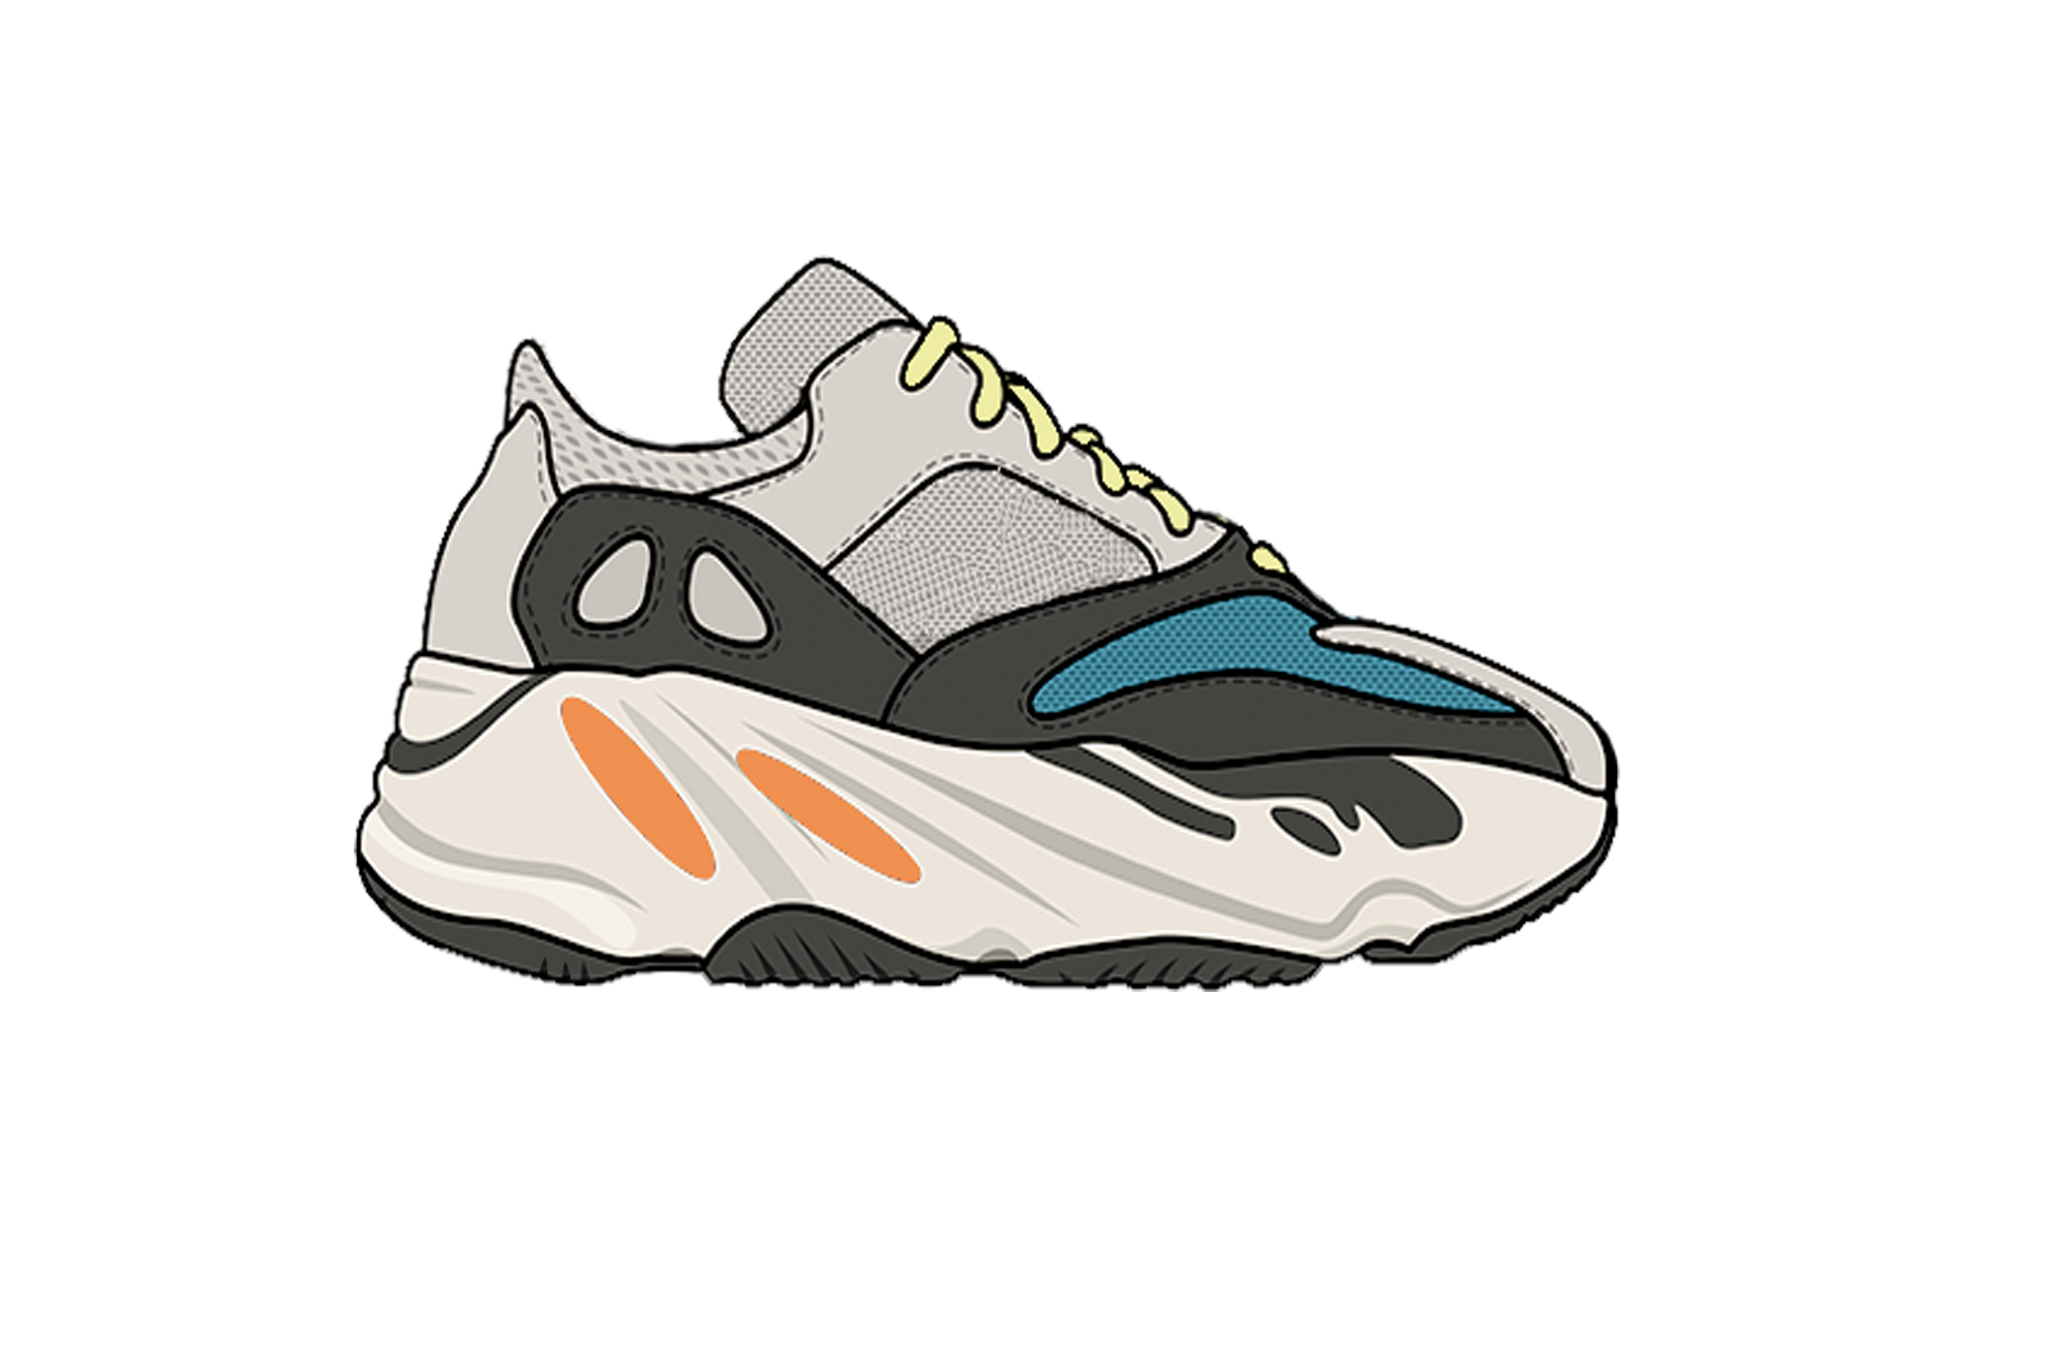 Yeezy Wave Runner 700 Sneaker Air